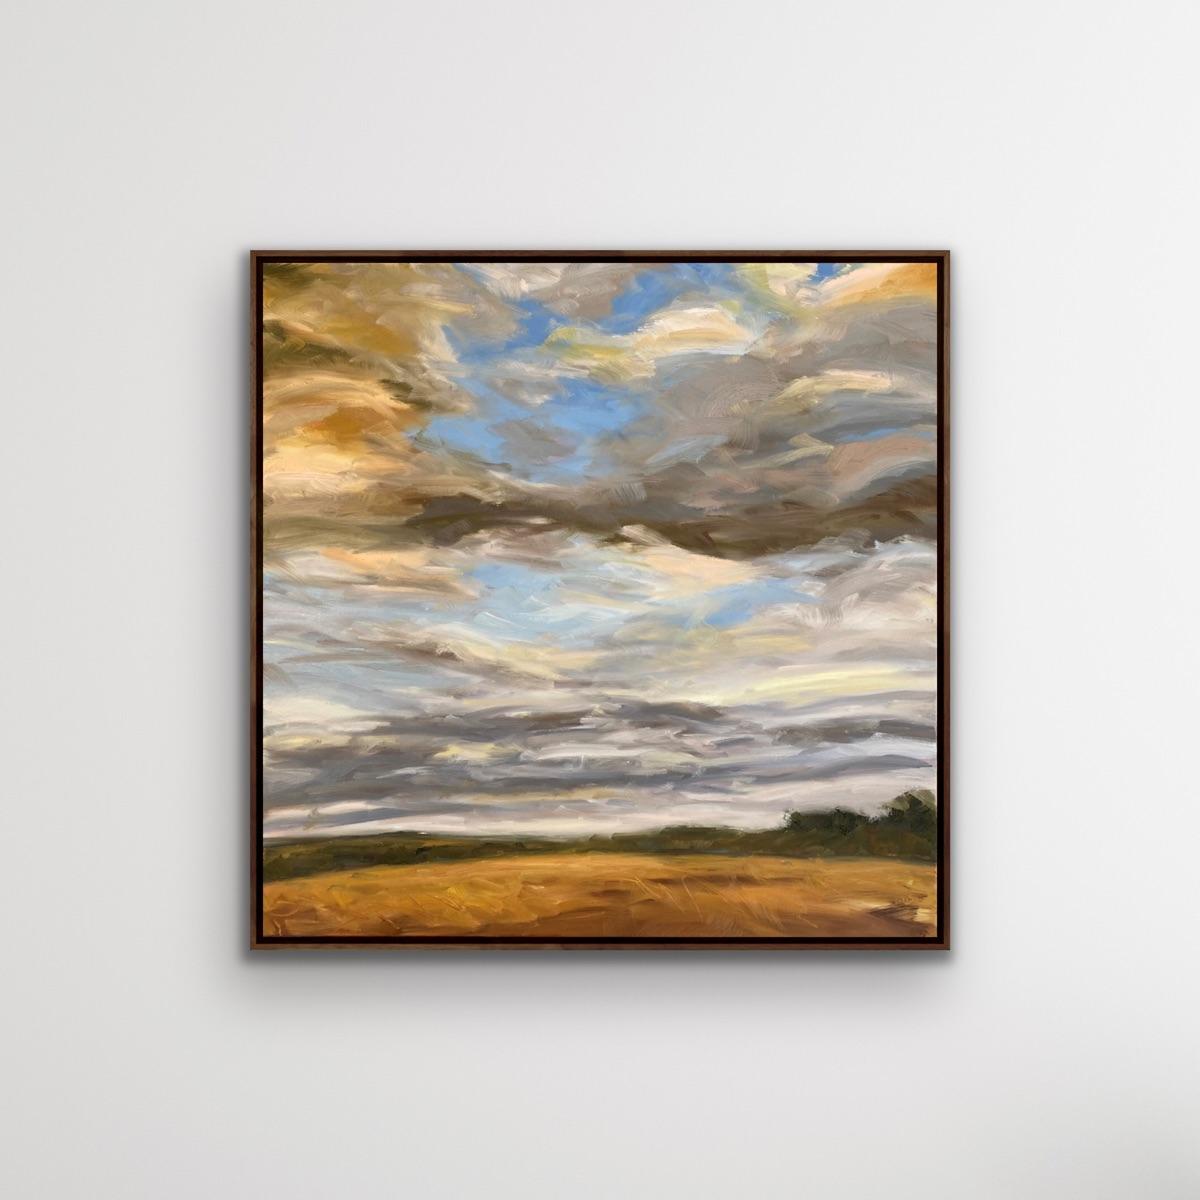 Golden Days, zeitgenössische Landschaftsmalerei im impressionistischen Stil der ländlichen Kunst (Zeitgenössisch), Painting, von Suzanne Winn 